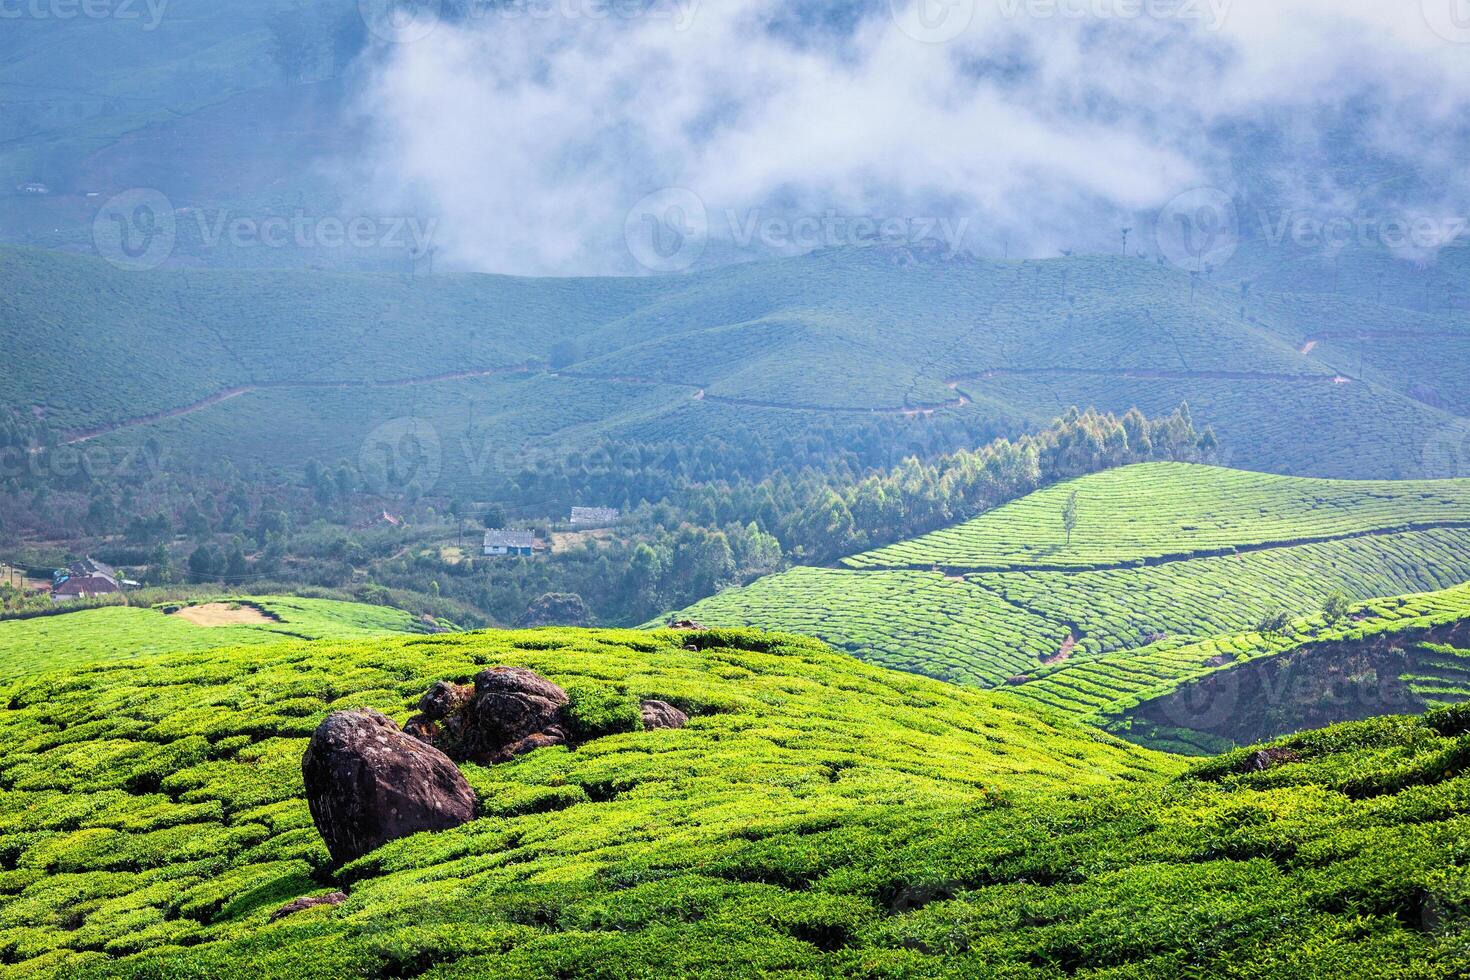 Plantations de thé vert à Munnar, Kerala, Inde photo